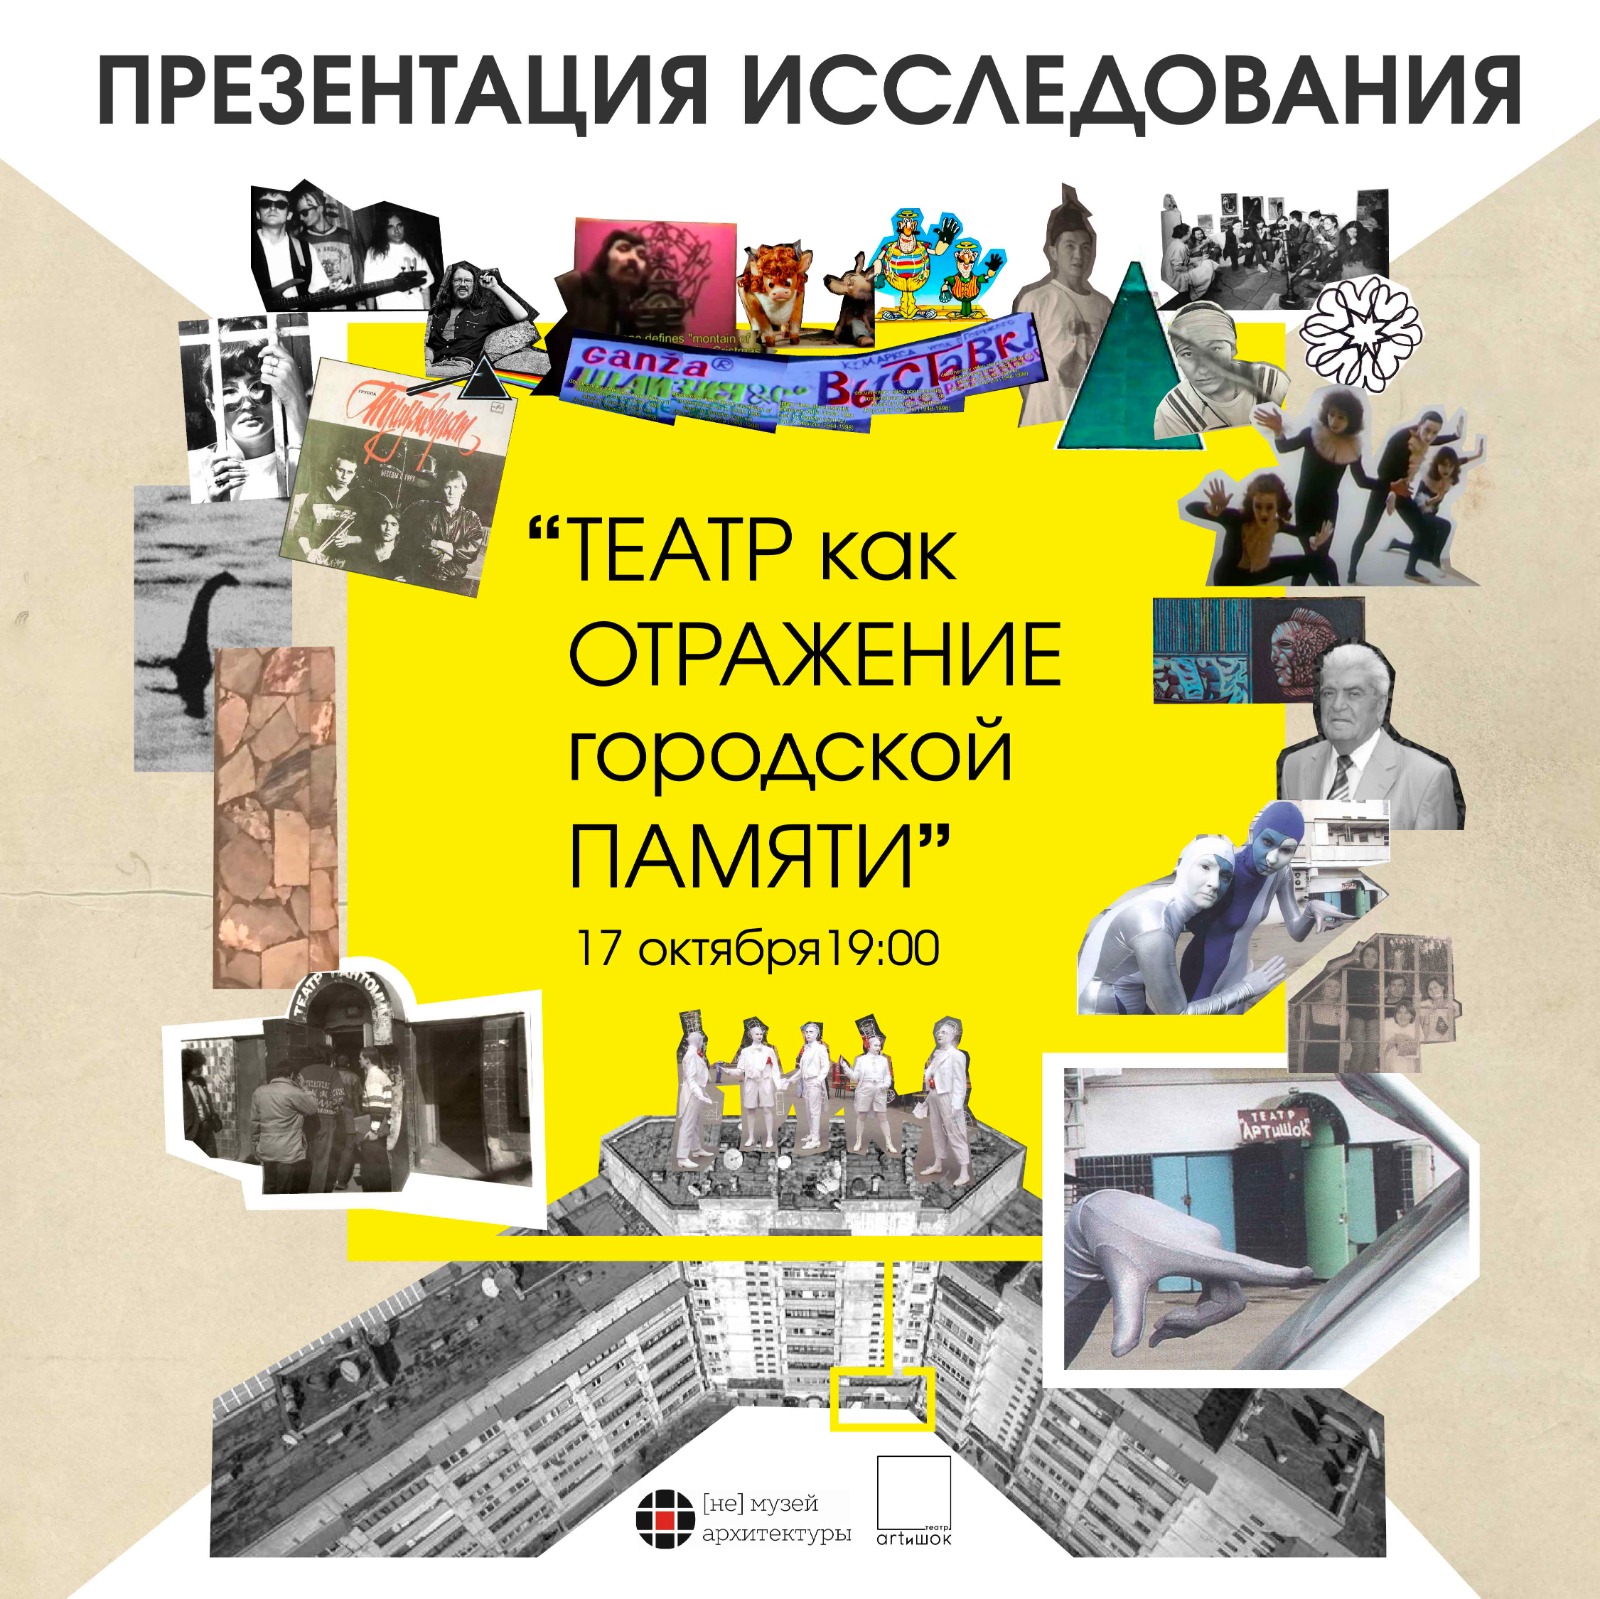 [Не] музей архитектуры Алматы и театр ARTиШОК исследуют алматинские подвалы 